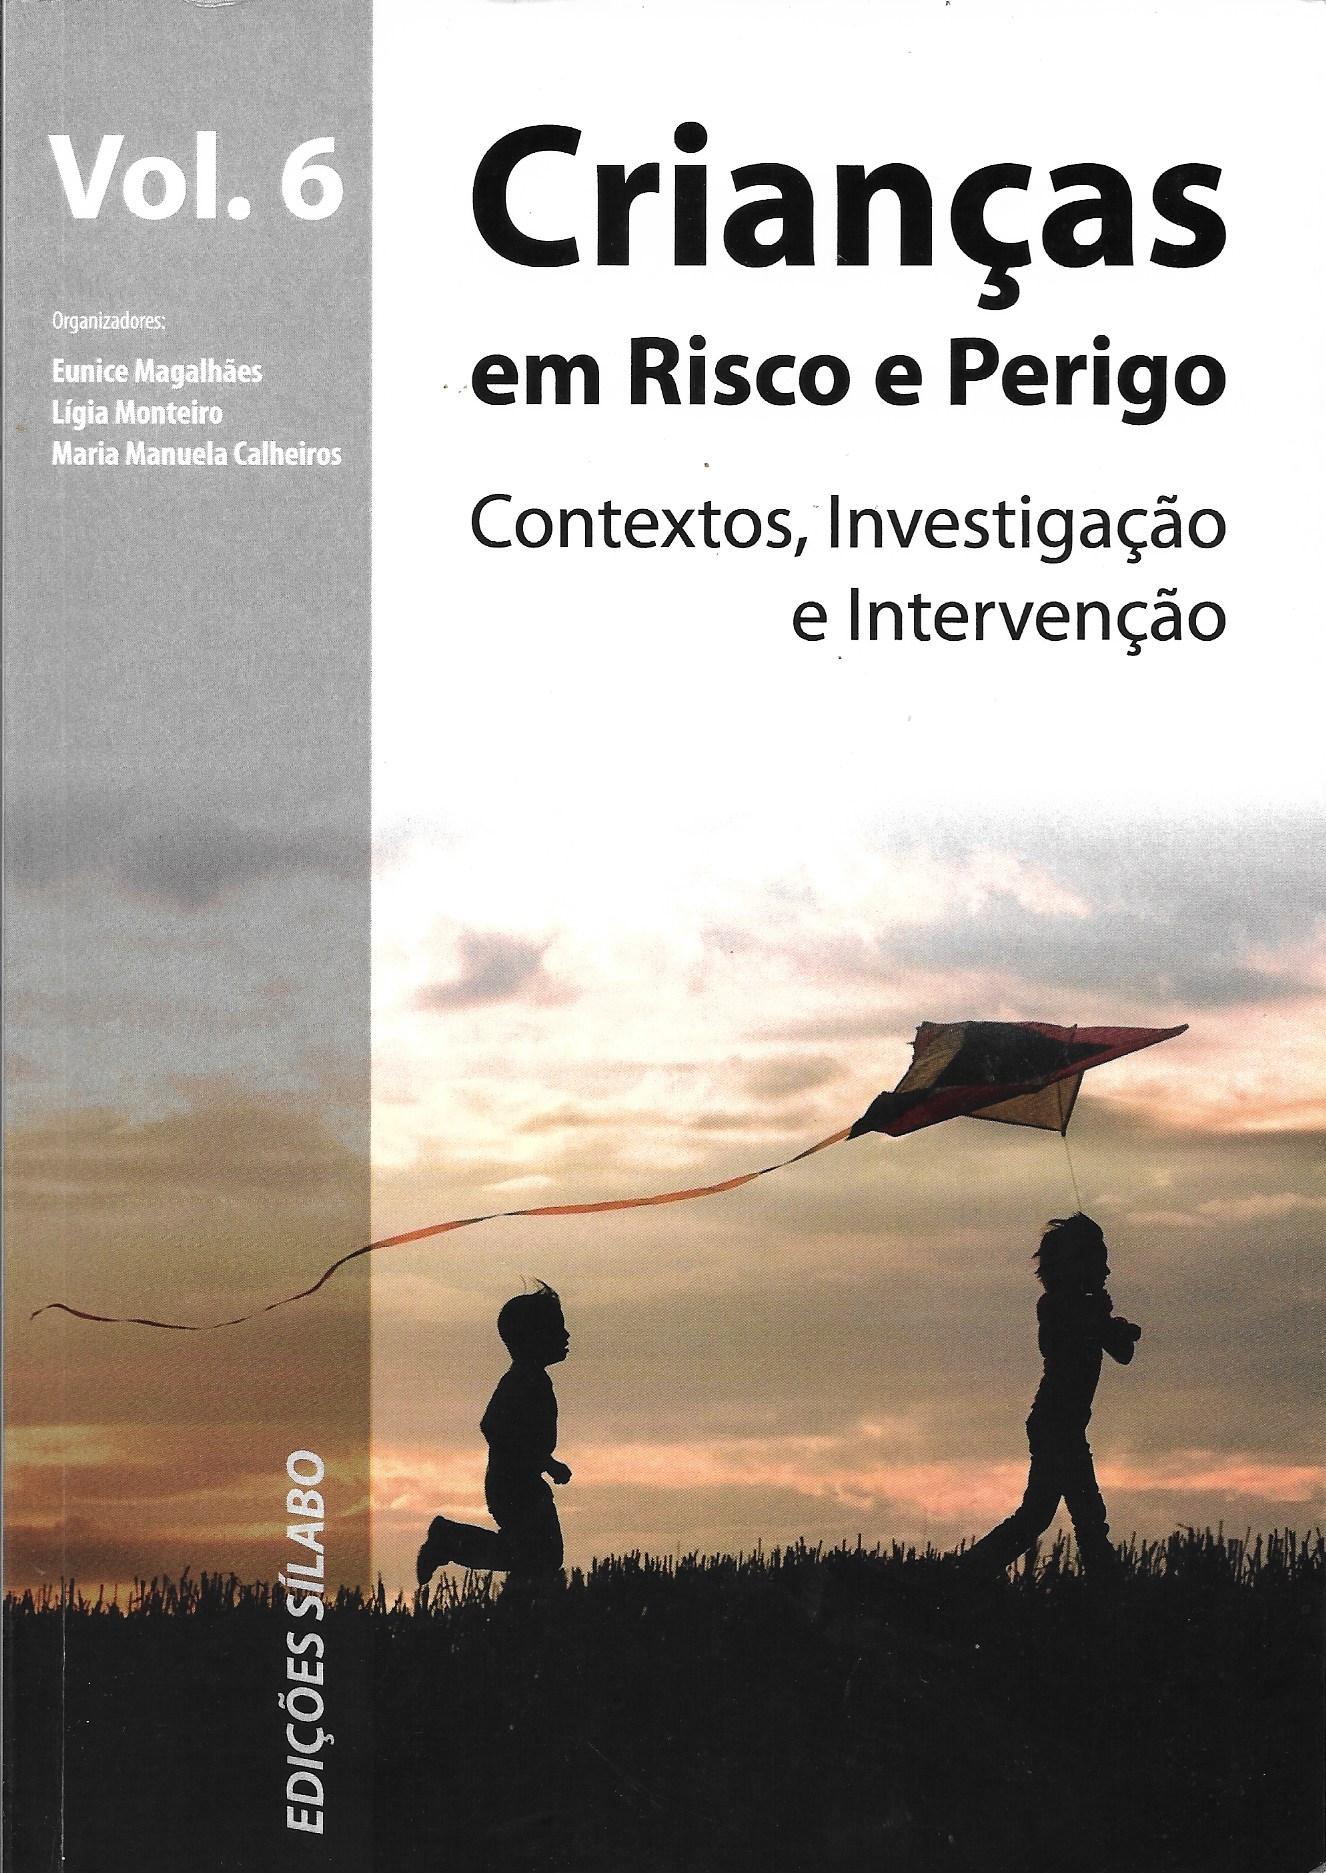 Crianças em Risco e Perigo - Contextos Investigação e Intervenção - Vol. 6